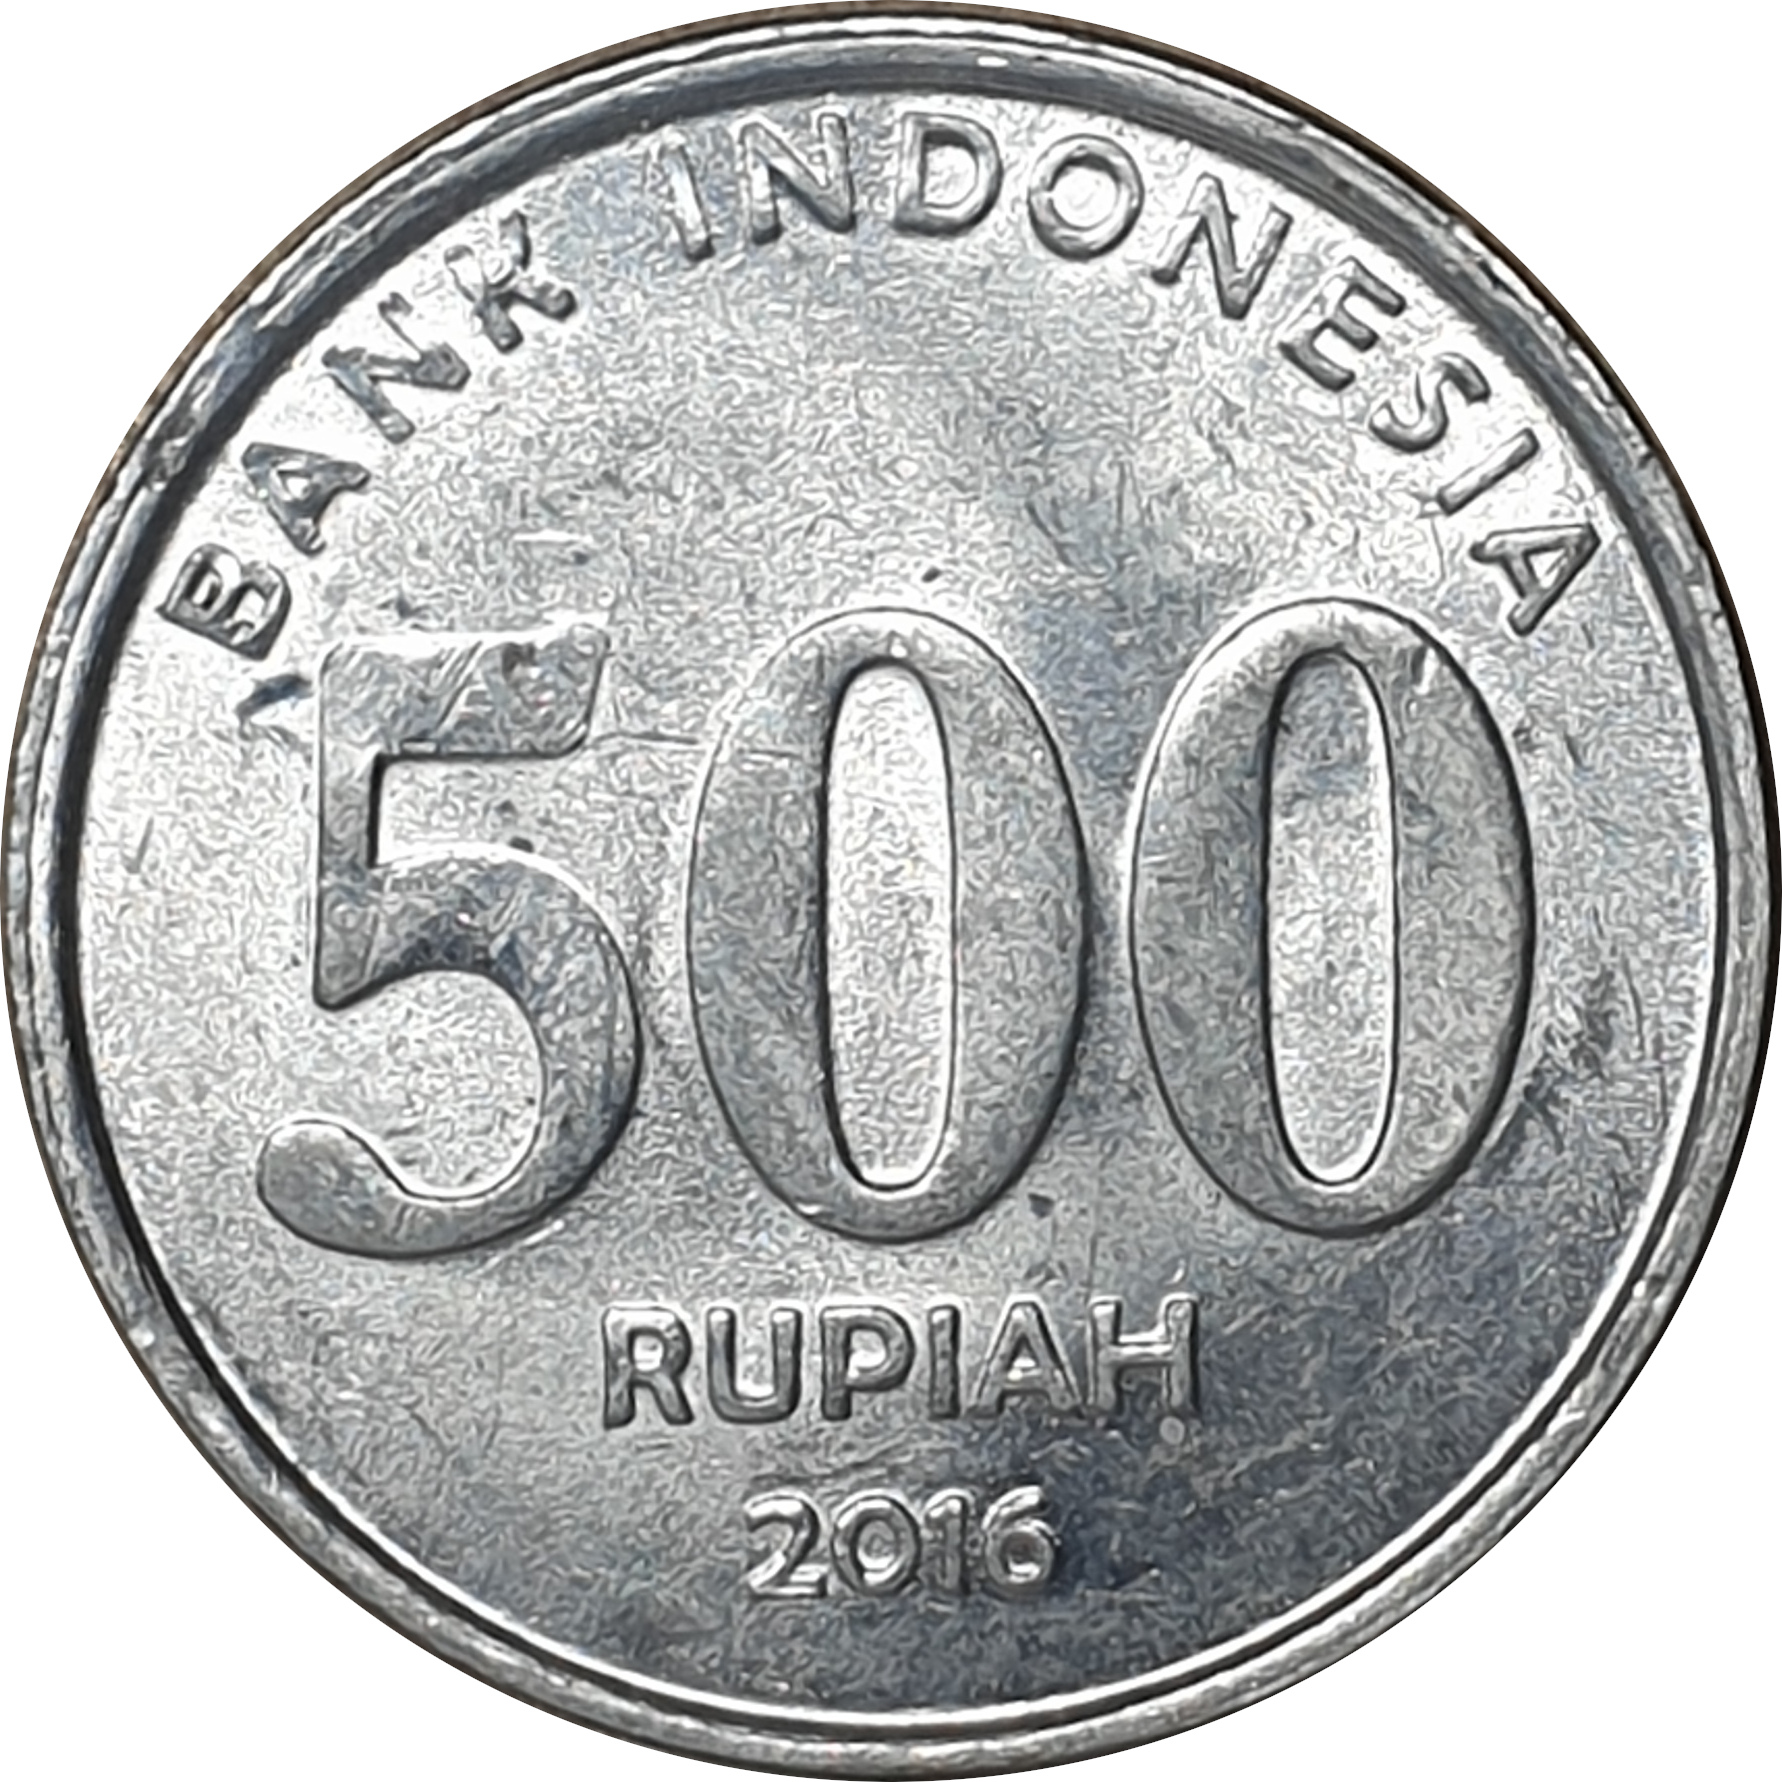 500 rupiah - Simatupang